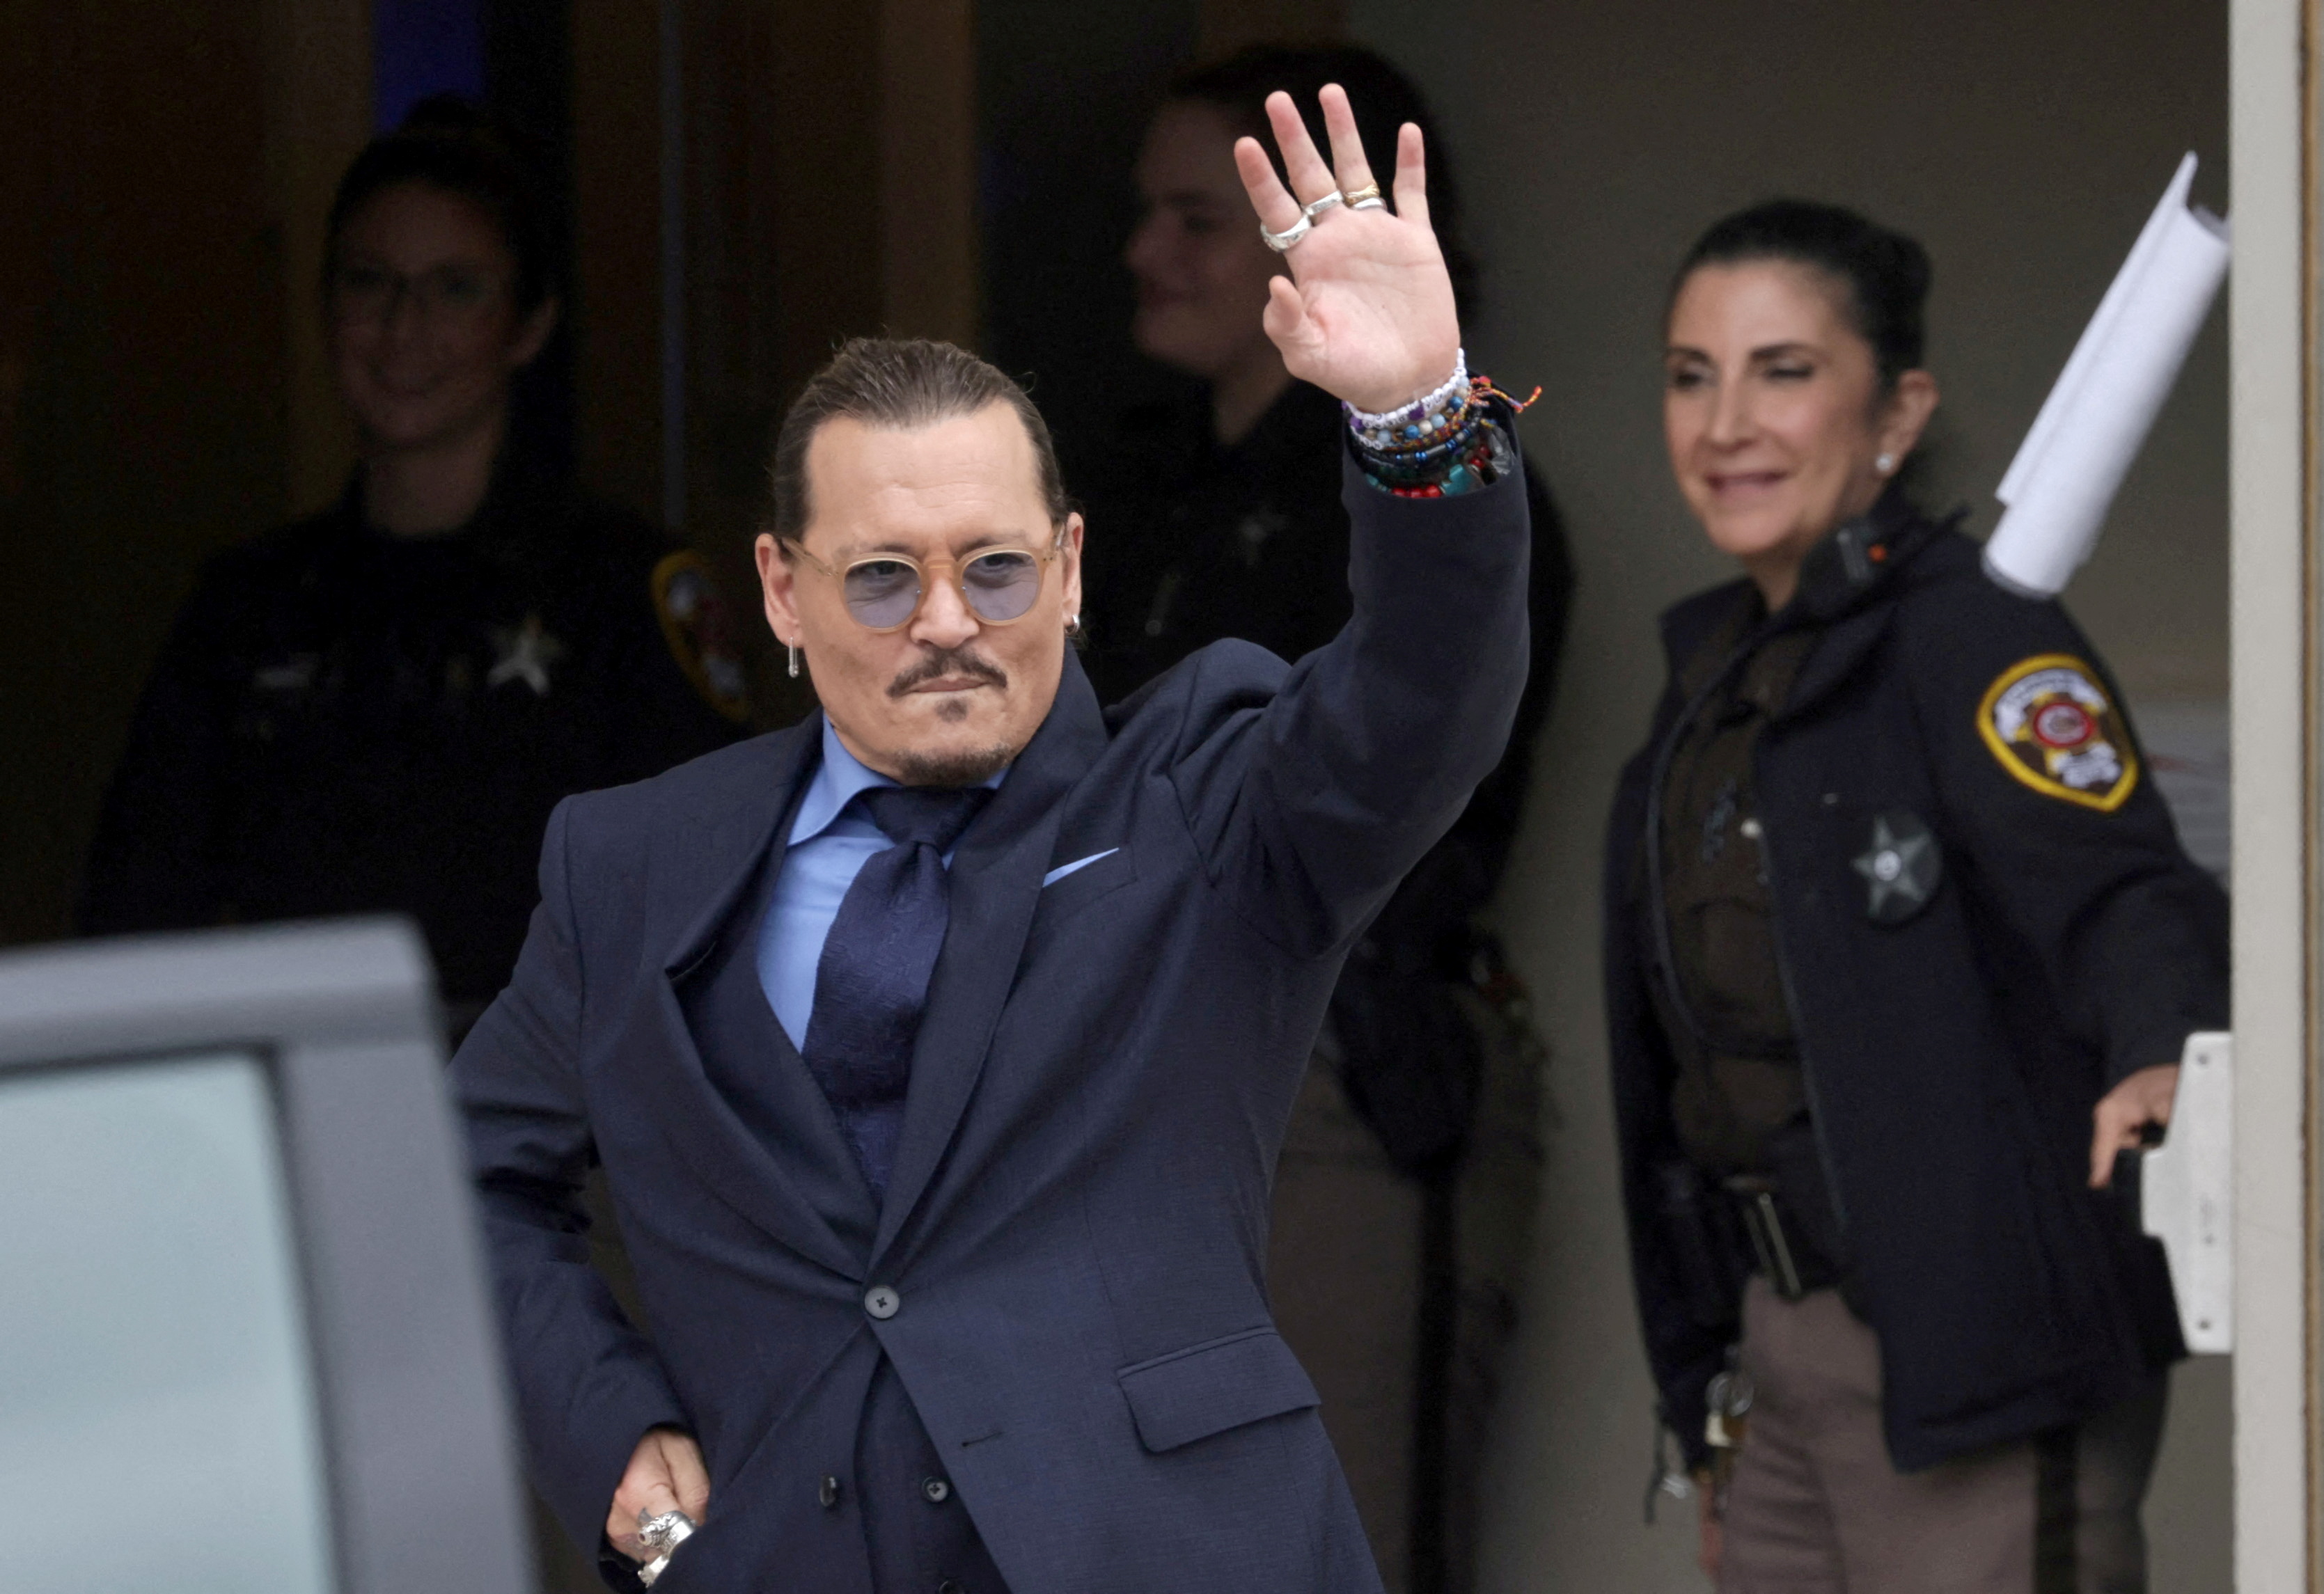 Foto de archivo: Johnny Depp saluda a sus fans al salir del tribunal tras una audiencia del juicio por difamación contra su ex mujer Amber Heard el 27 de mayo de 2022 (REUTERS/Evelyn Hockstein)